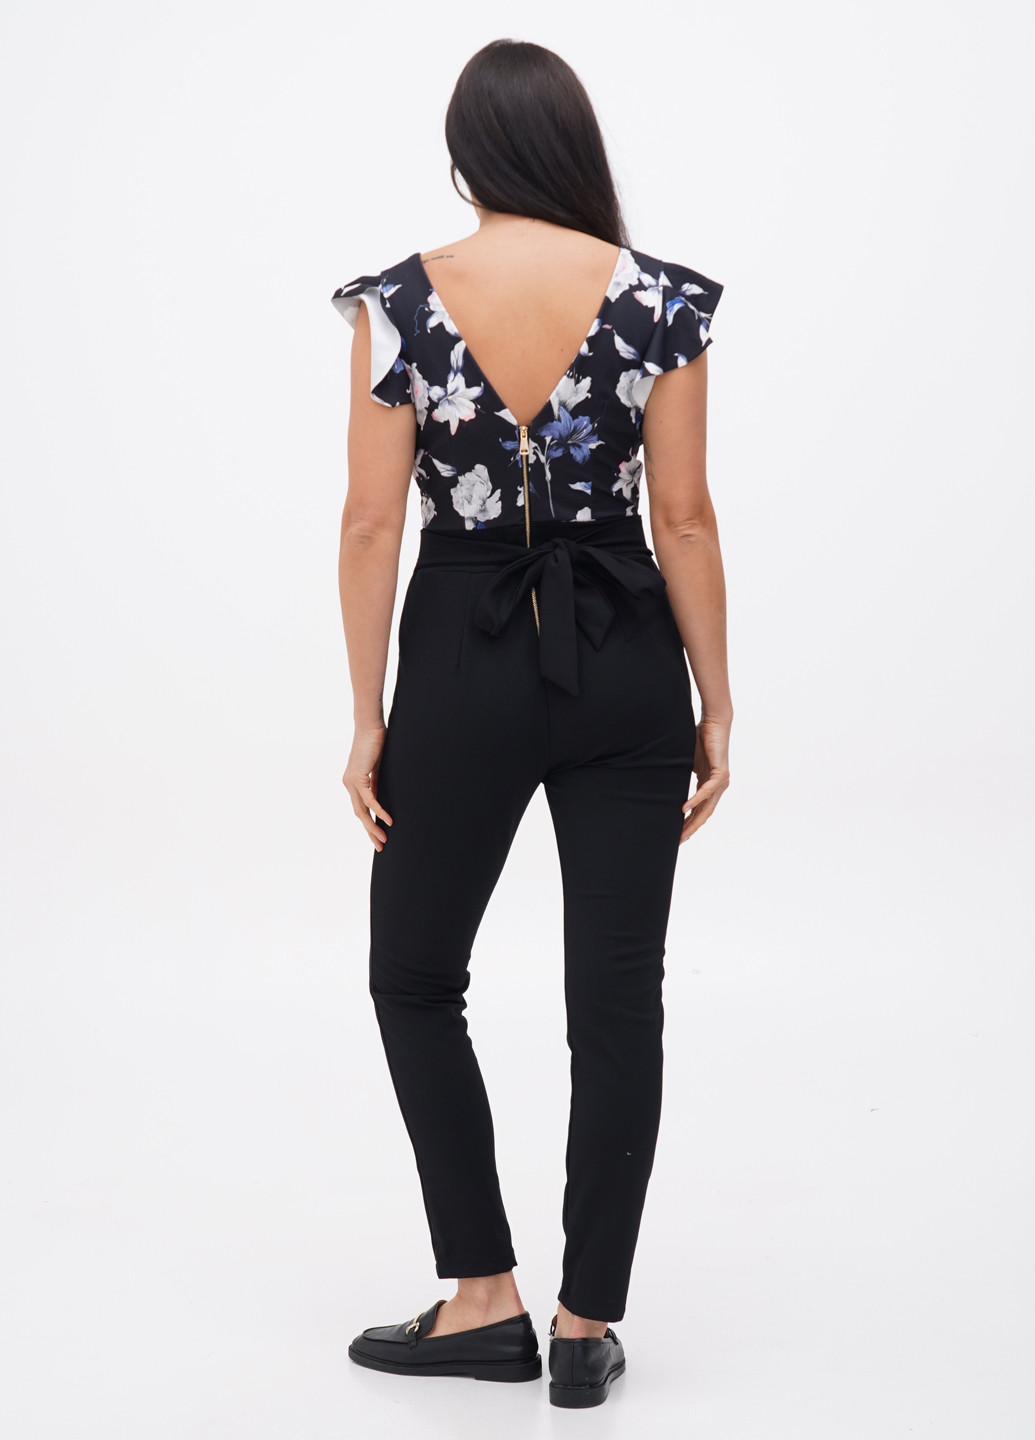 Комбинезон Plume Paris комбинезон-брюки цветочный чёрный кэжуал полиэстер